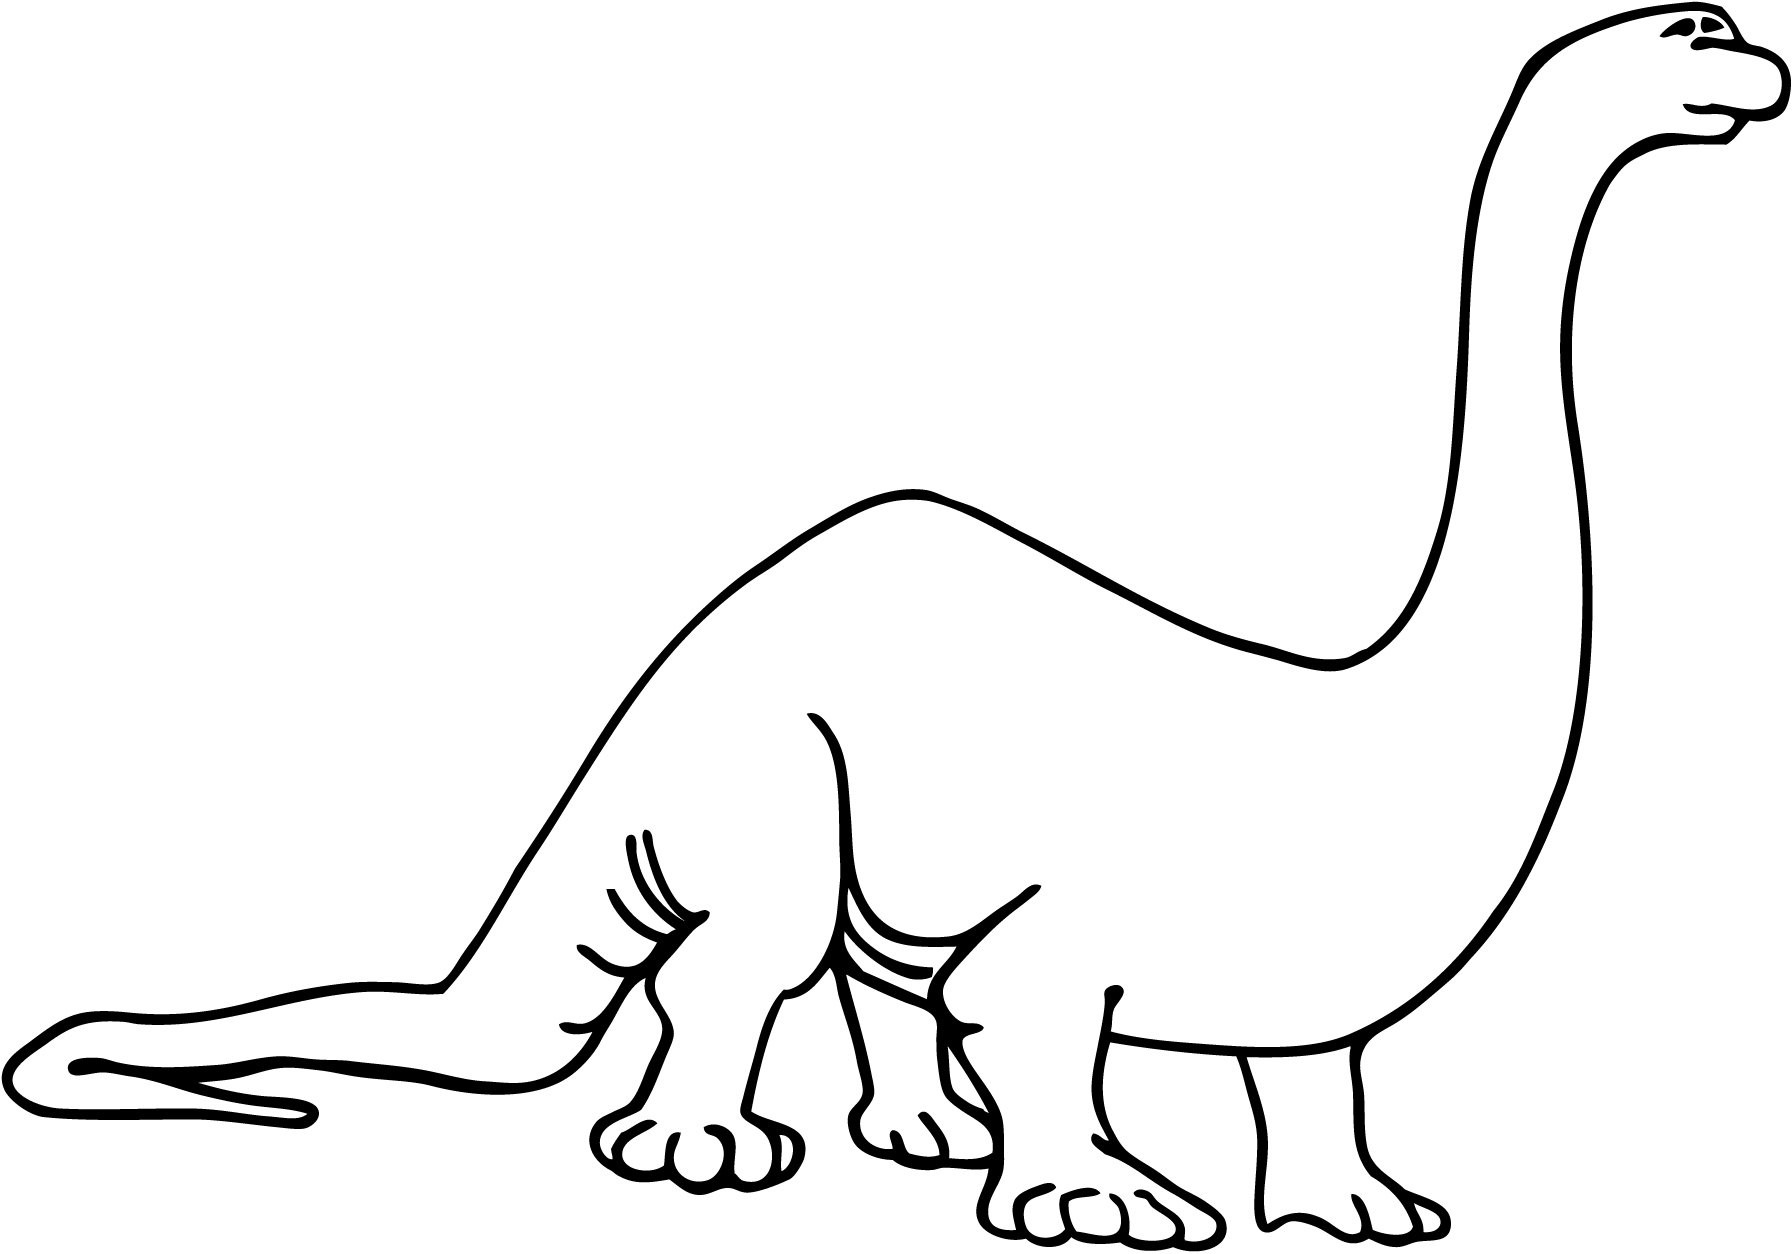 Brontosaurus clip art